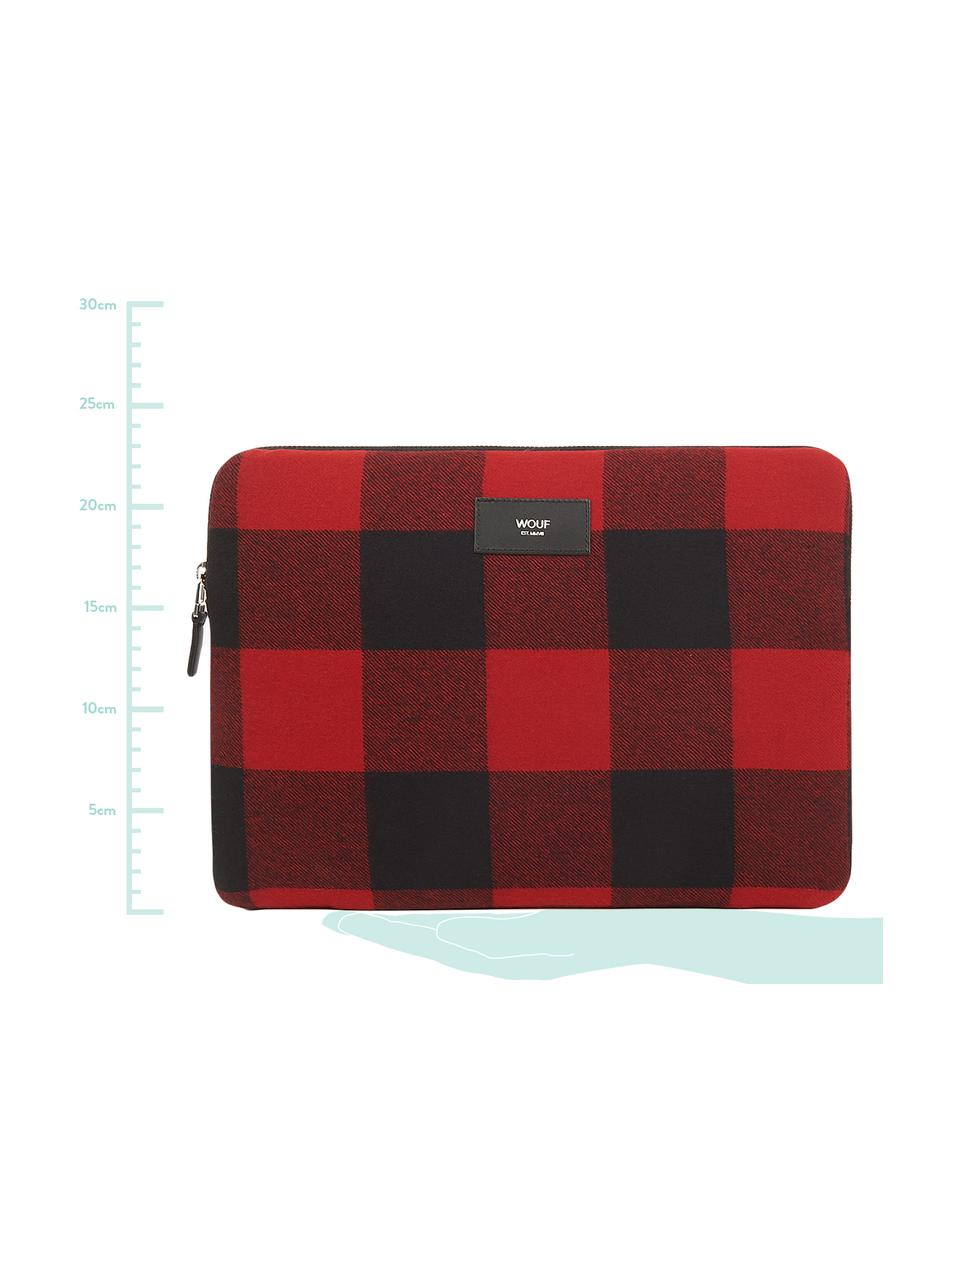 Laptophülle Red Jack für MacBook Pro 13 Zoll, Baumwolle, Leder, Rot, Schwarz, 33 x 23 cm